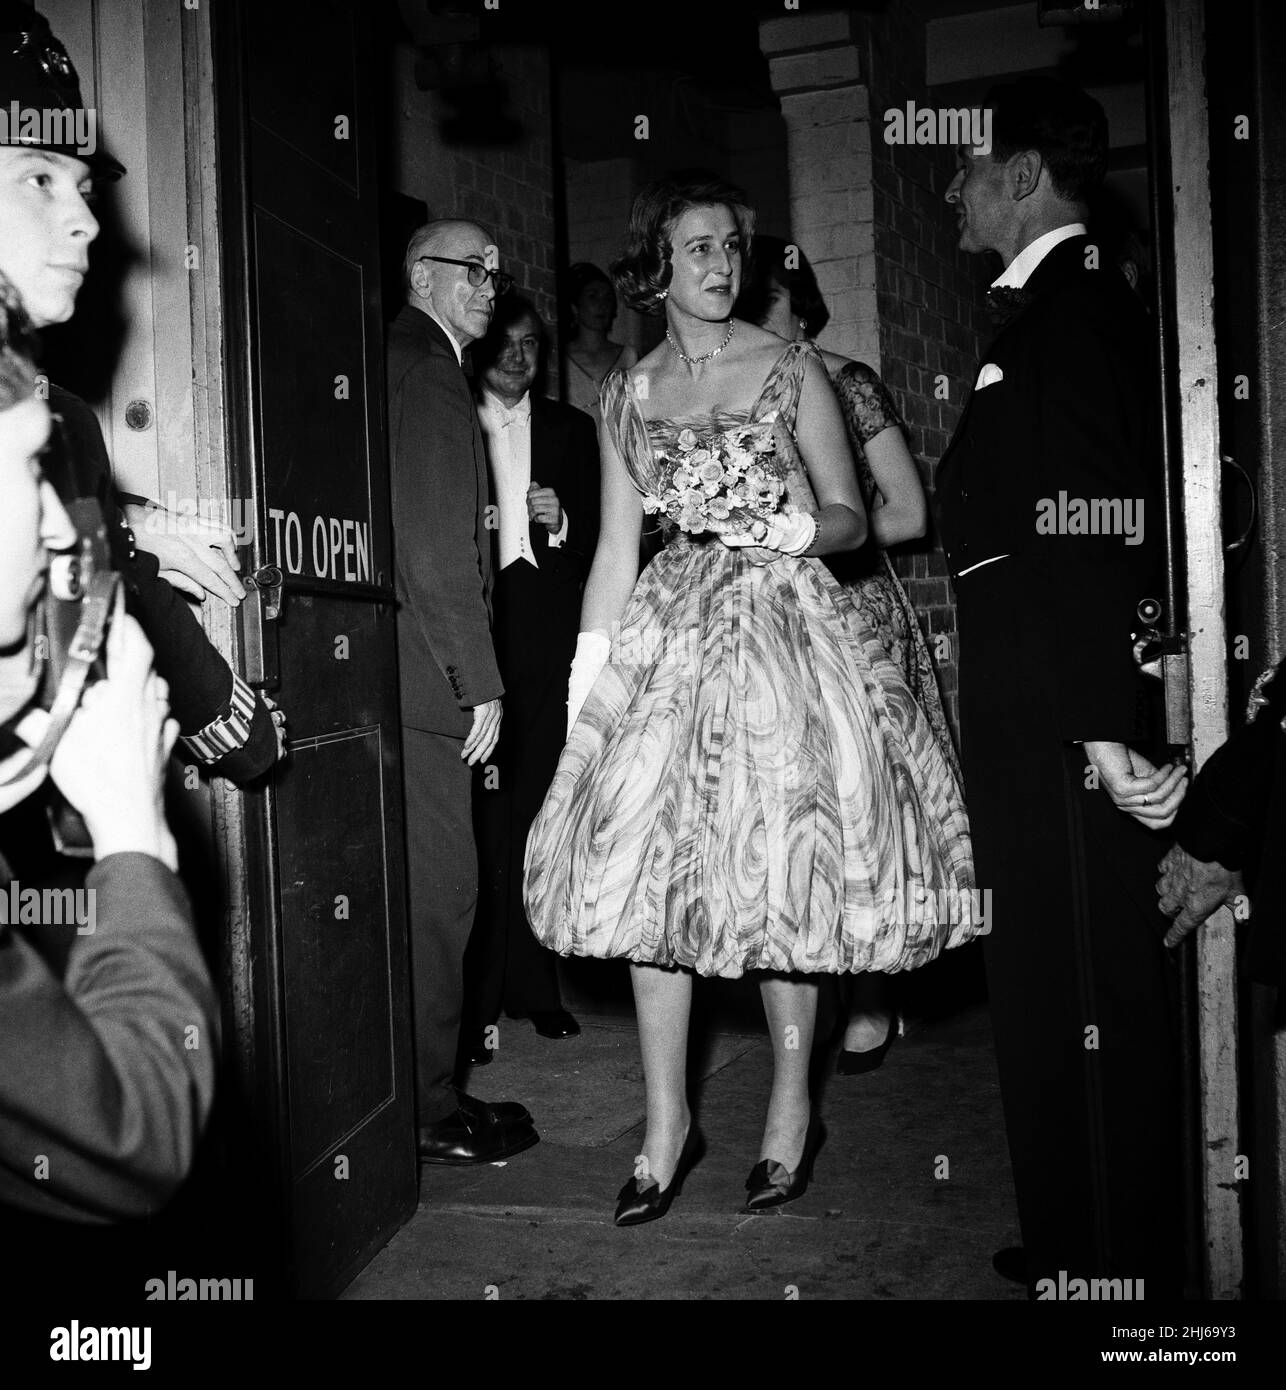 Prinzessin Alexandra von Kent im Sadler's Wells Theater, nachdem sie eine Aufführung von Semele von Händel gesehen hatte. 25th. Juni 1959. Stockfoto